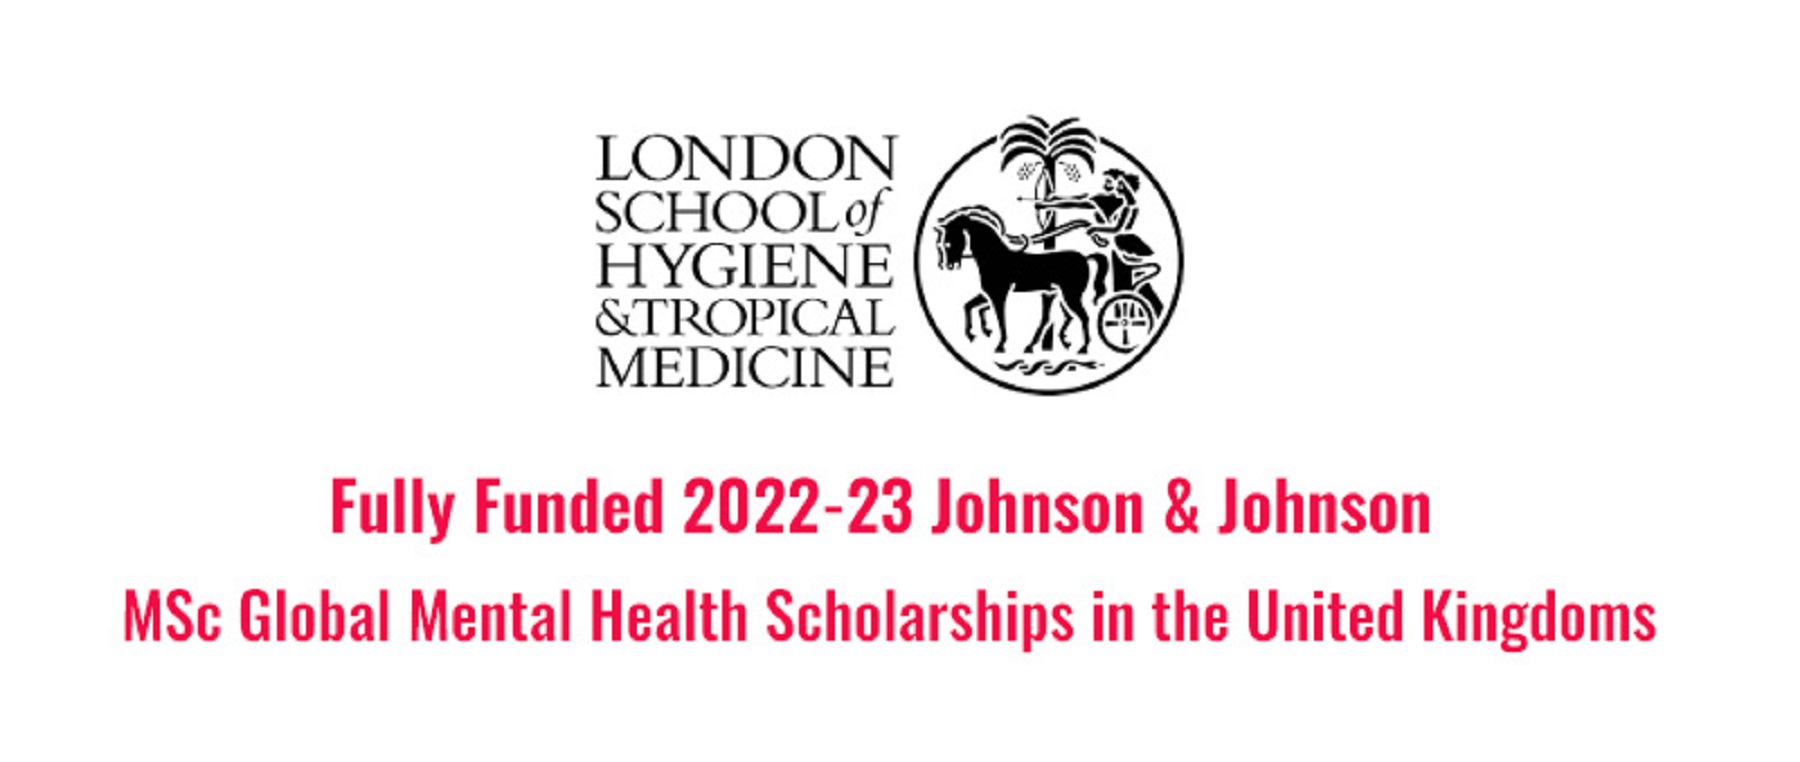 Fully Funded LSHTM 20222023 Johnson and Johnson MSc Global